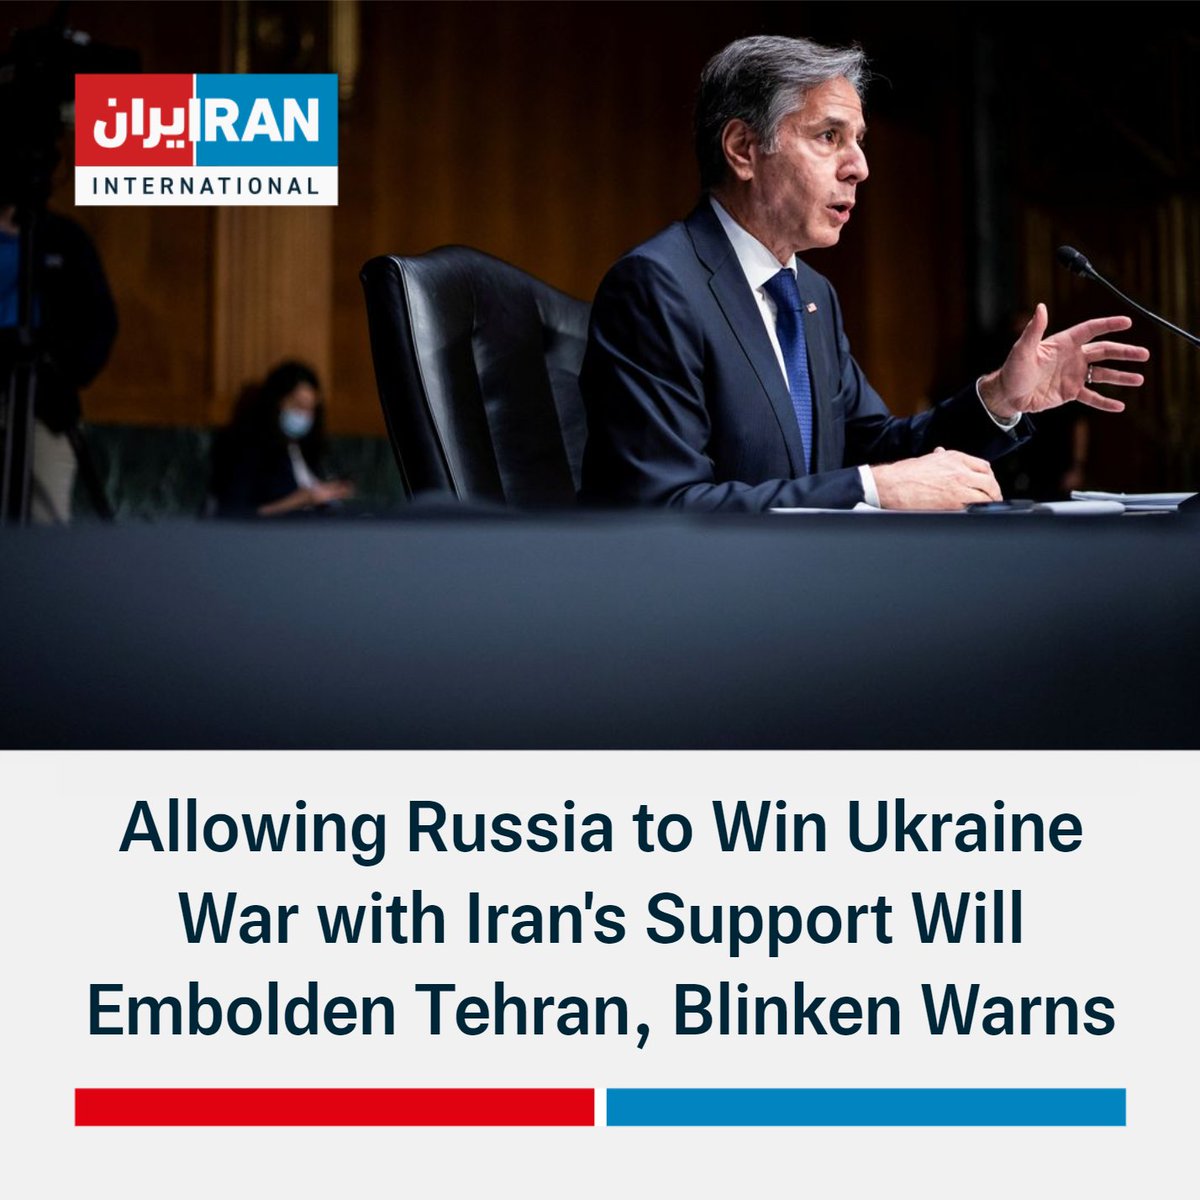 Američki državni tajnik @SecBlinken na saslušanju u Senatu: Otkako smo Rusiji prekinuli tradicionalne načine opskrbe svoje vojske, ona se sve više obraća Iranu za pomoć. Zauzvrat, Moskva je opskrbljivala Iran sa sve naprednijom vojnom tehnologijom